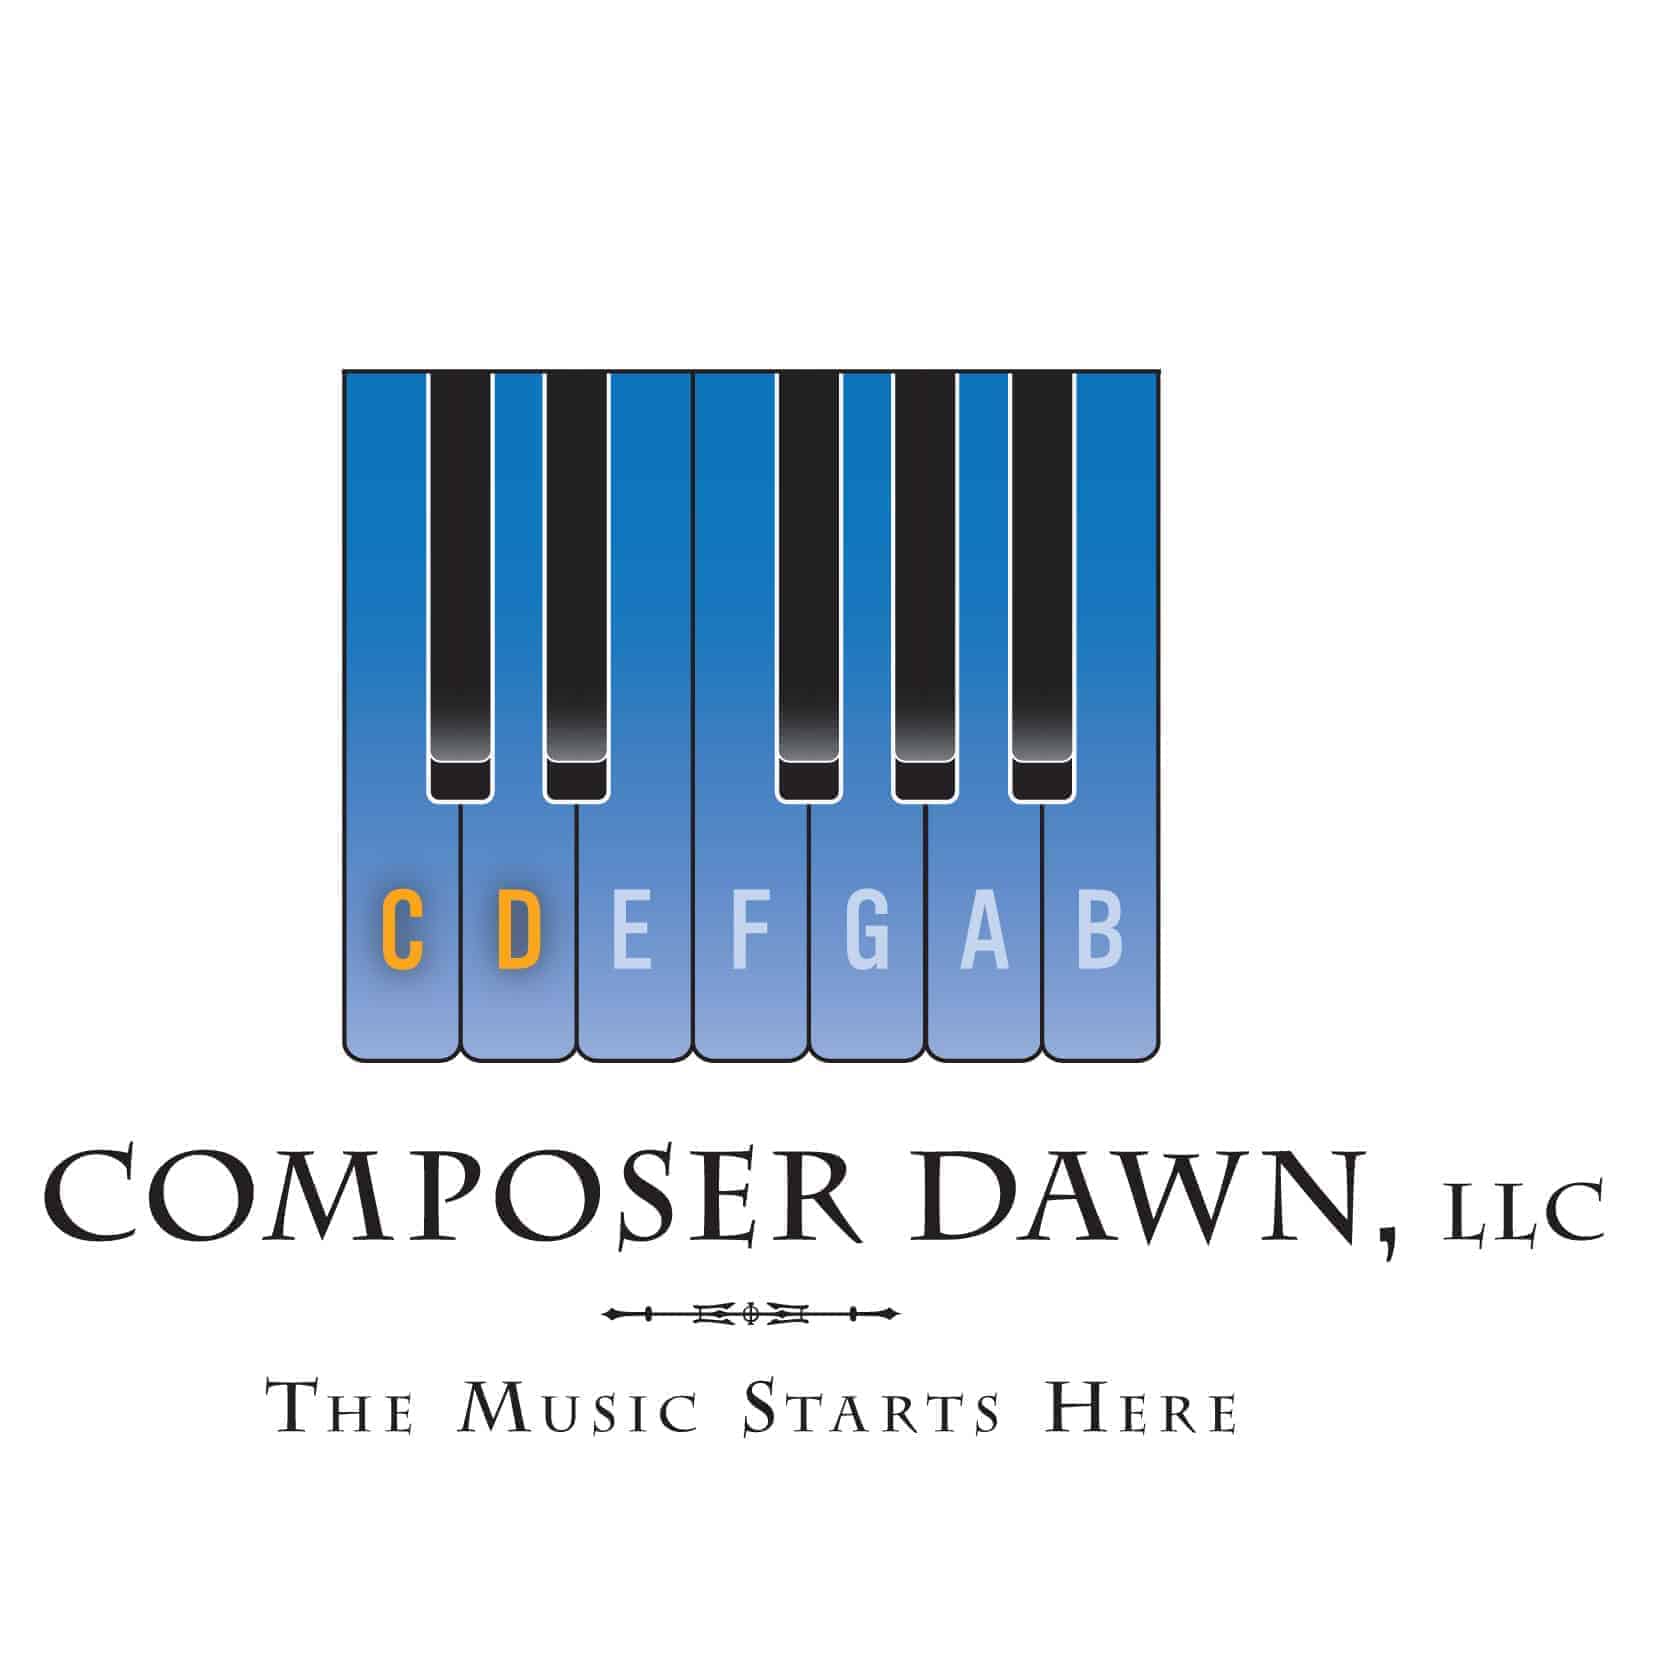 ComposerDawn, LLC